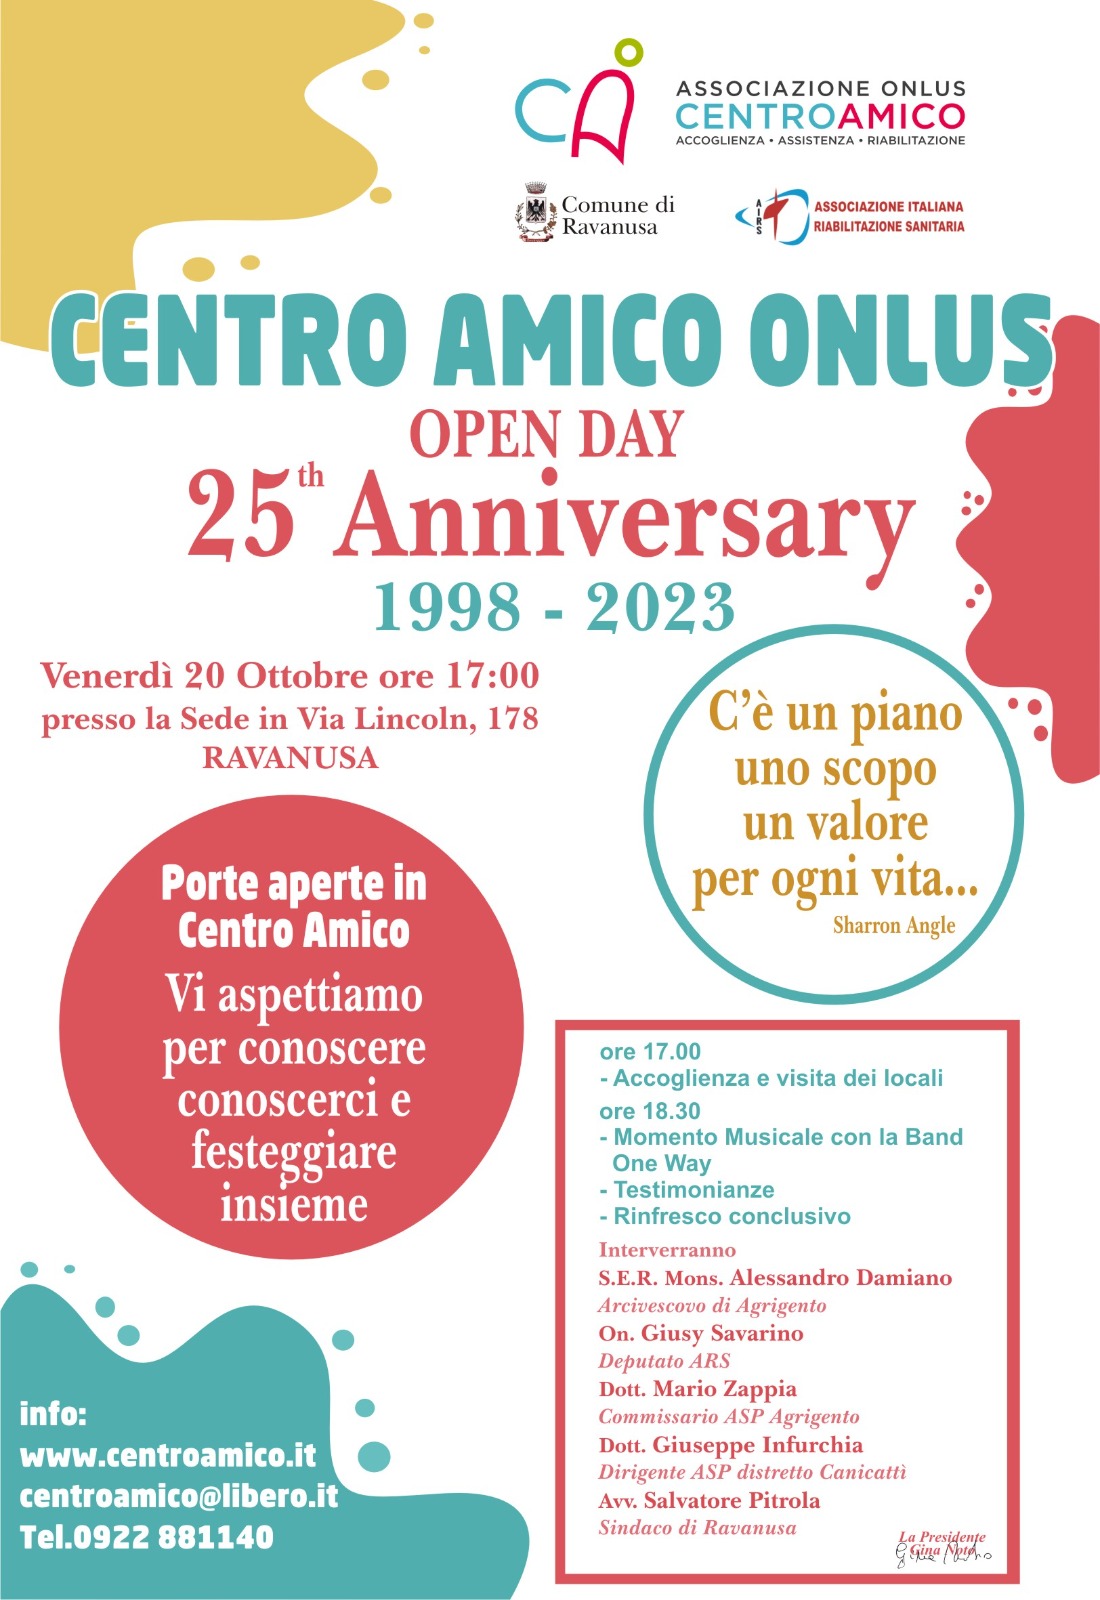 Festeggiamenti per il venticinquesimo anniversario dell’inizio delle attività riabilitative del Centro Amico